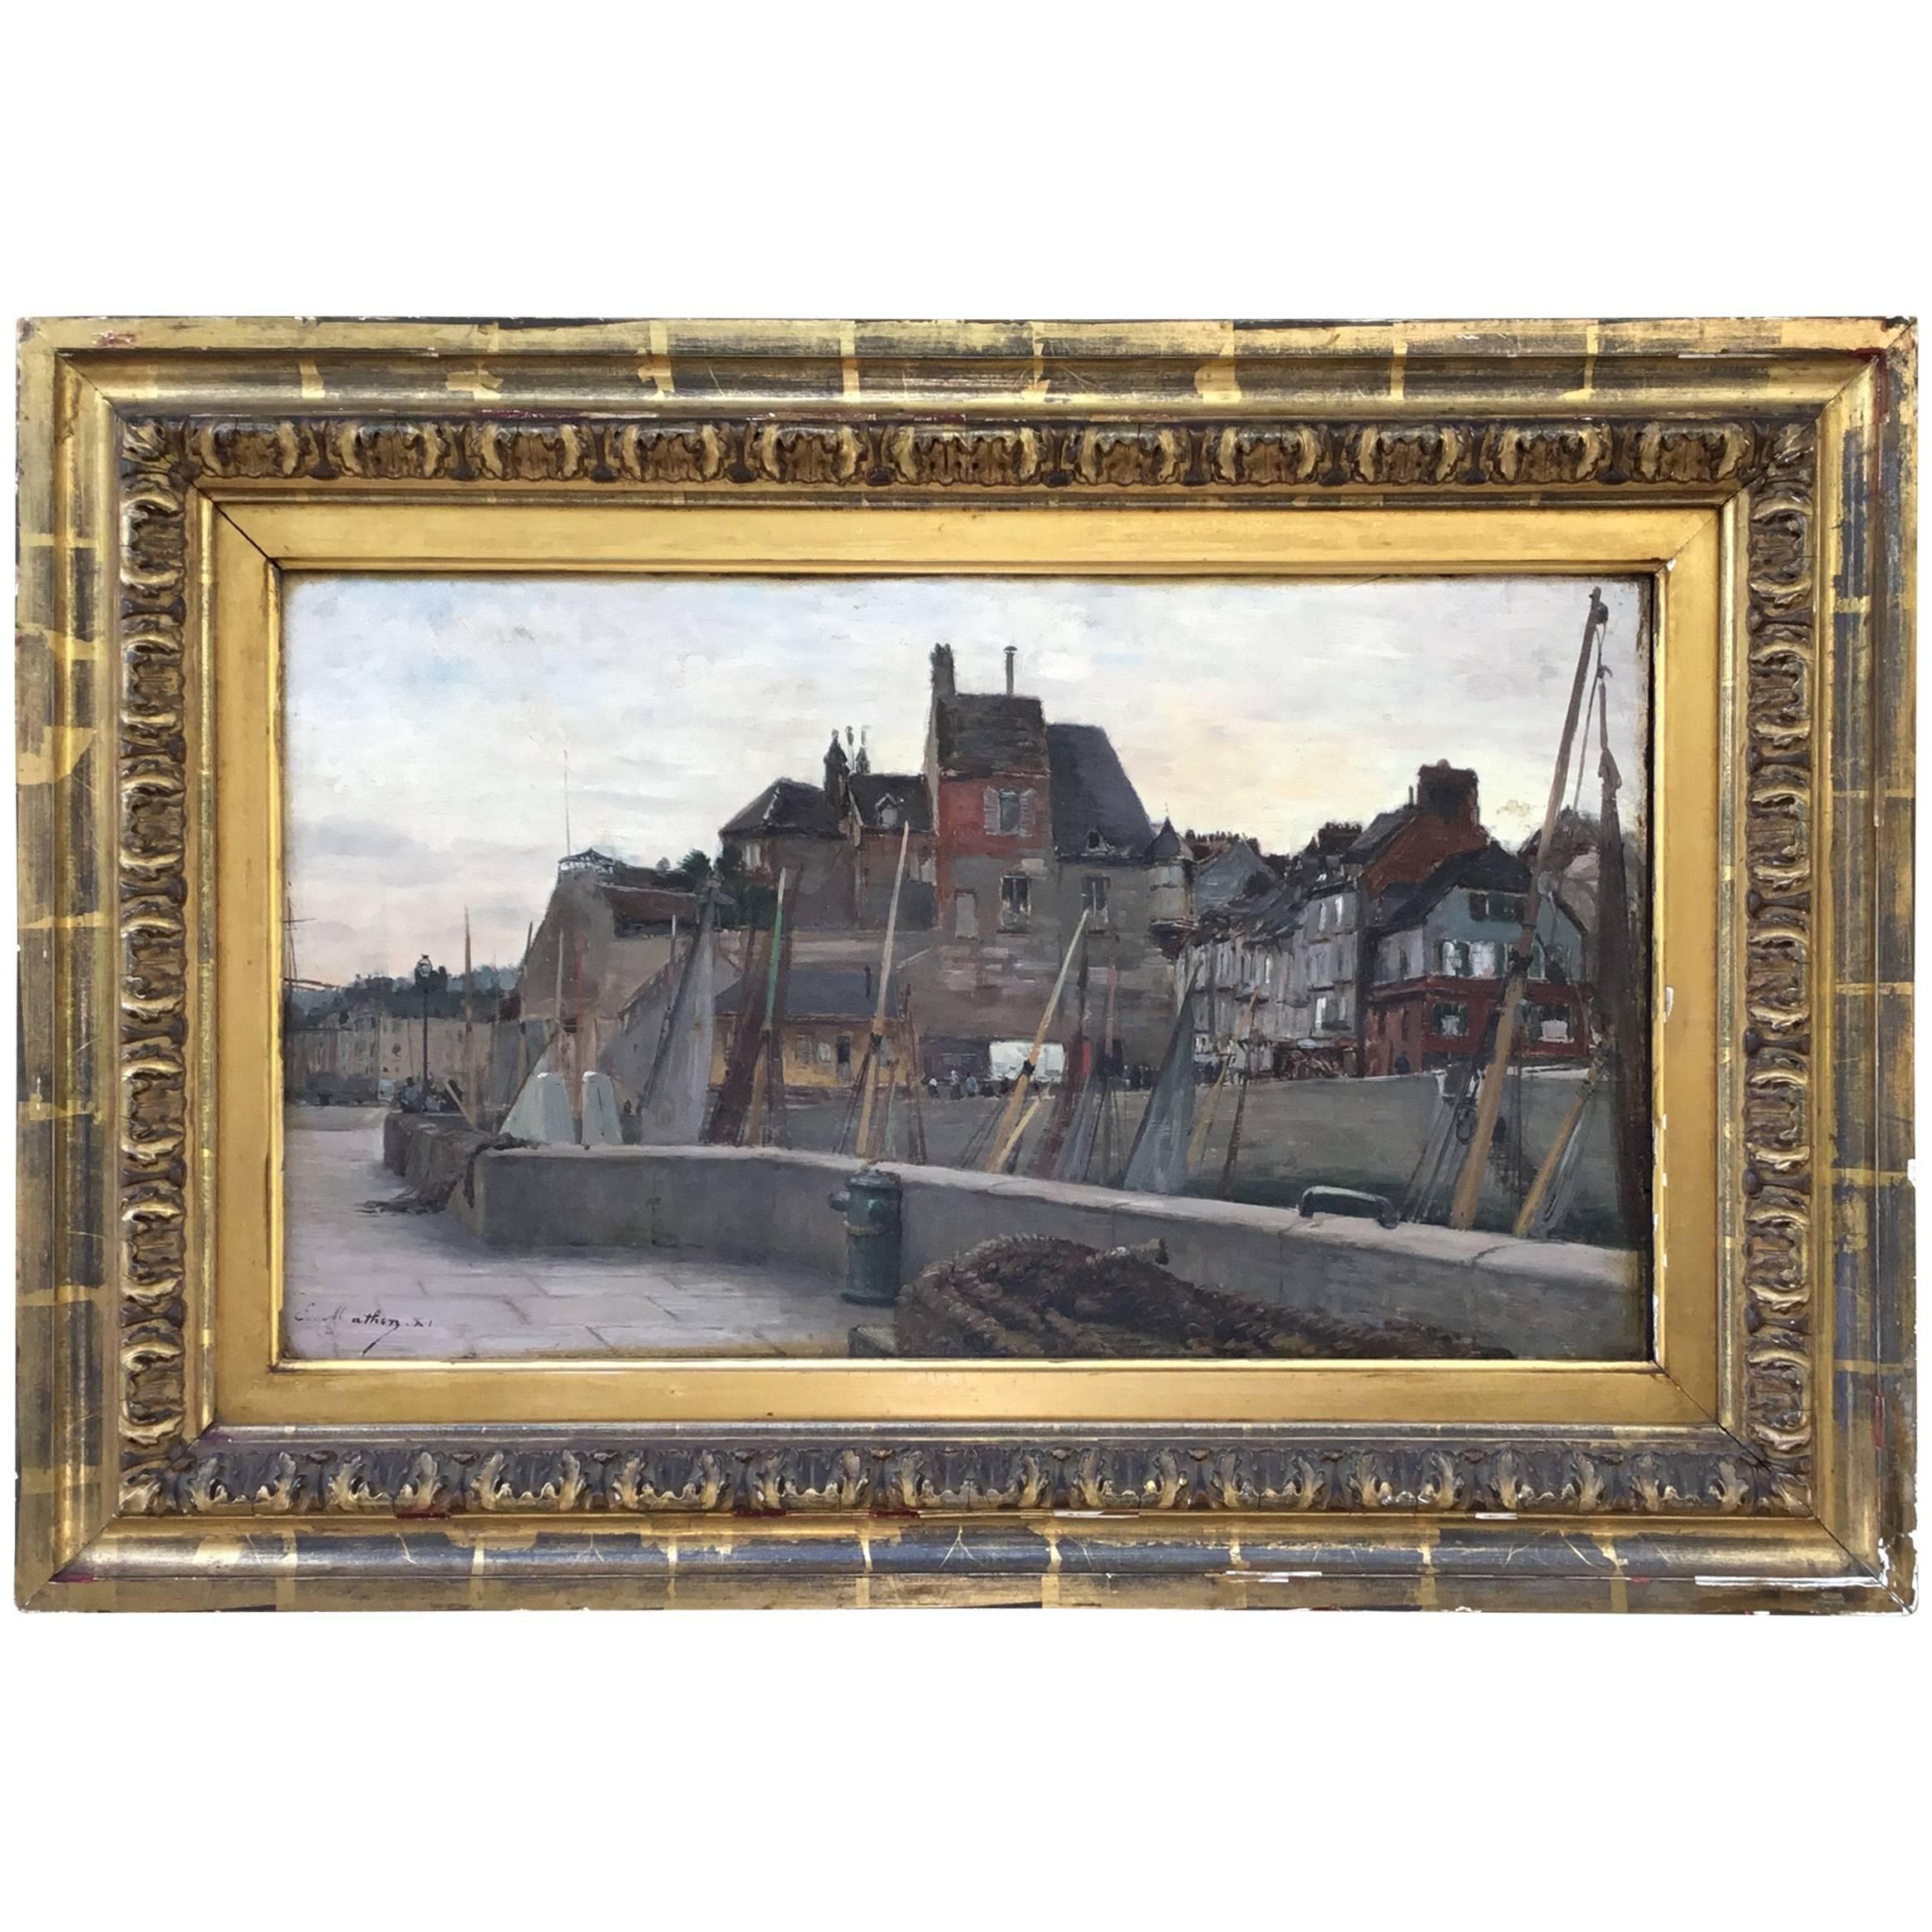 Emile Louis Mathon “The Lieutenancy at Honfleur” Oil Painting on Wood